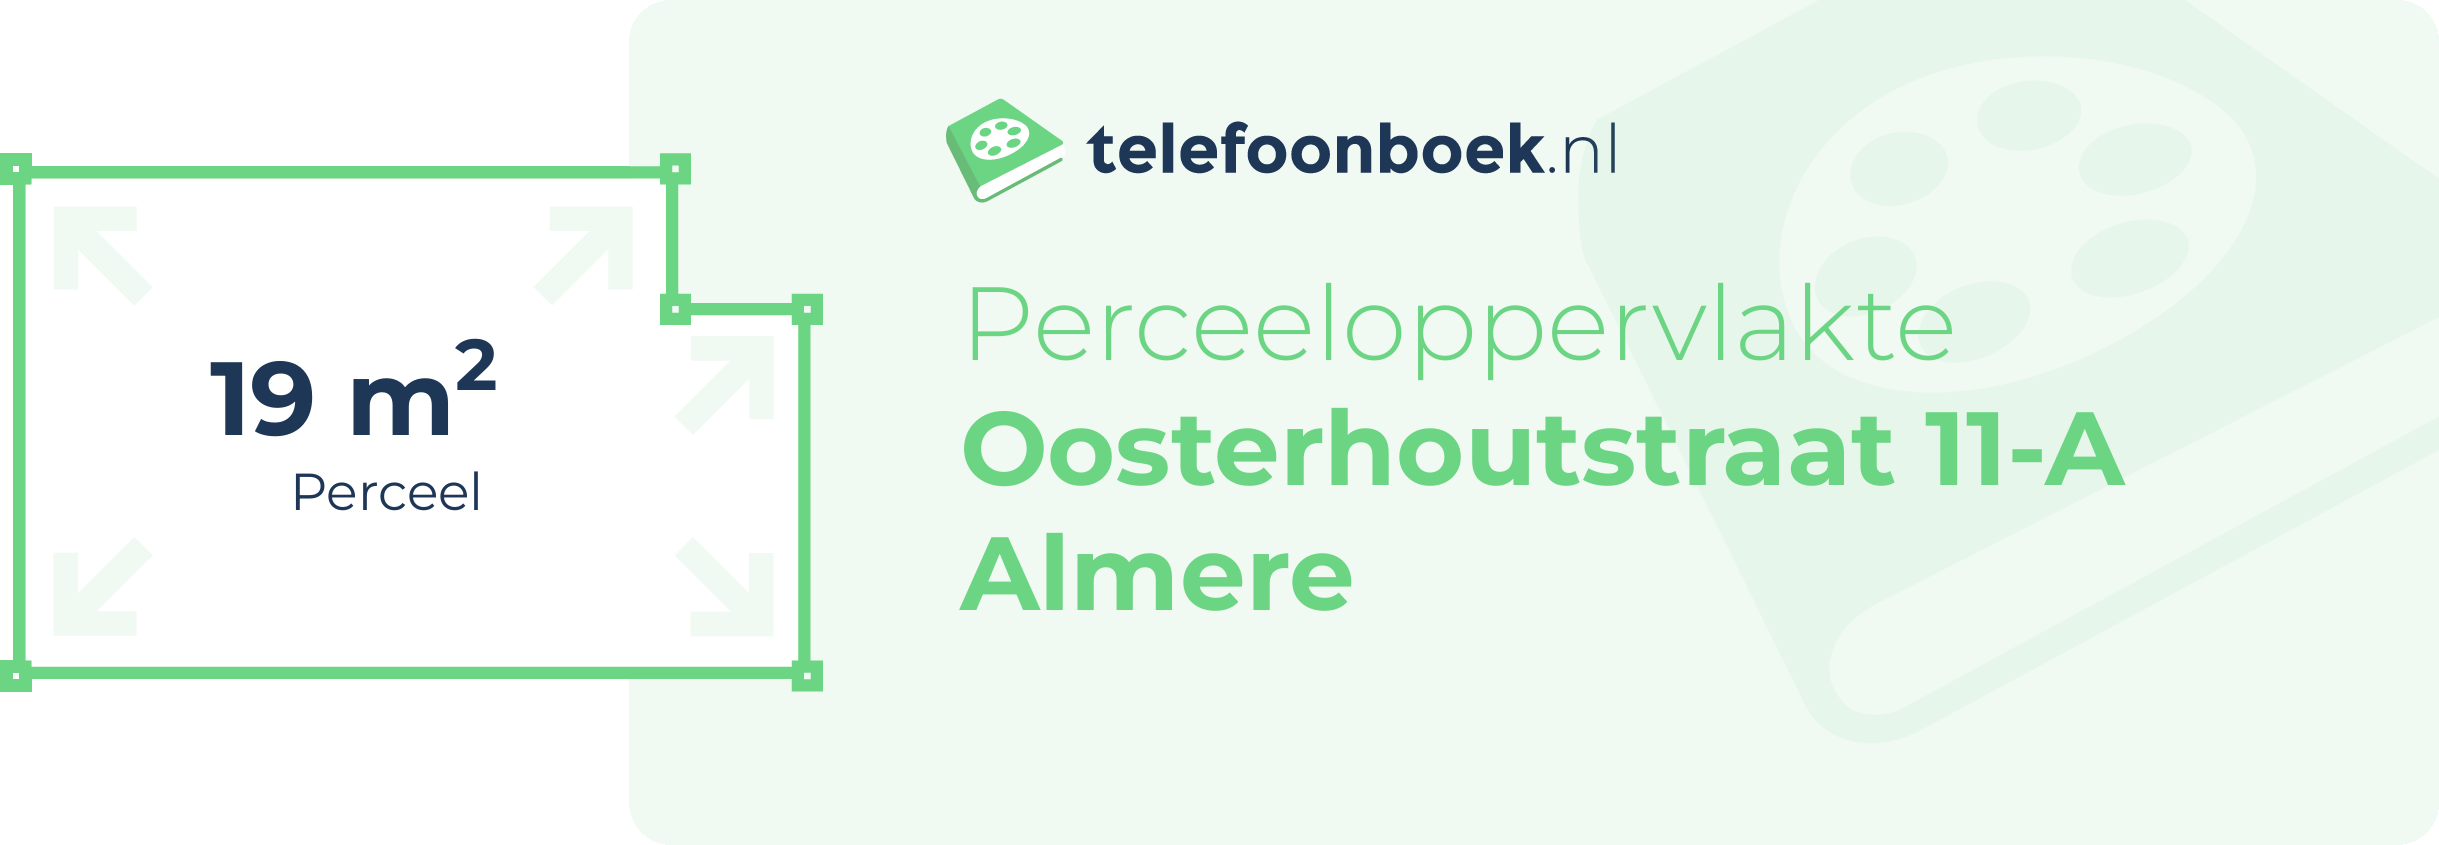 Perceeloppervlakte Oosterhoutstraat 11-A Almere